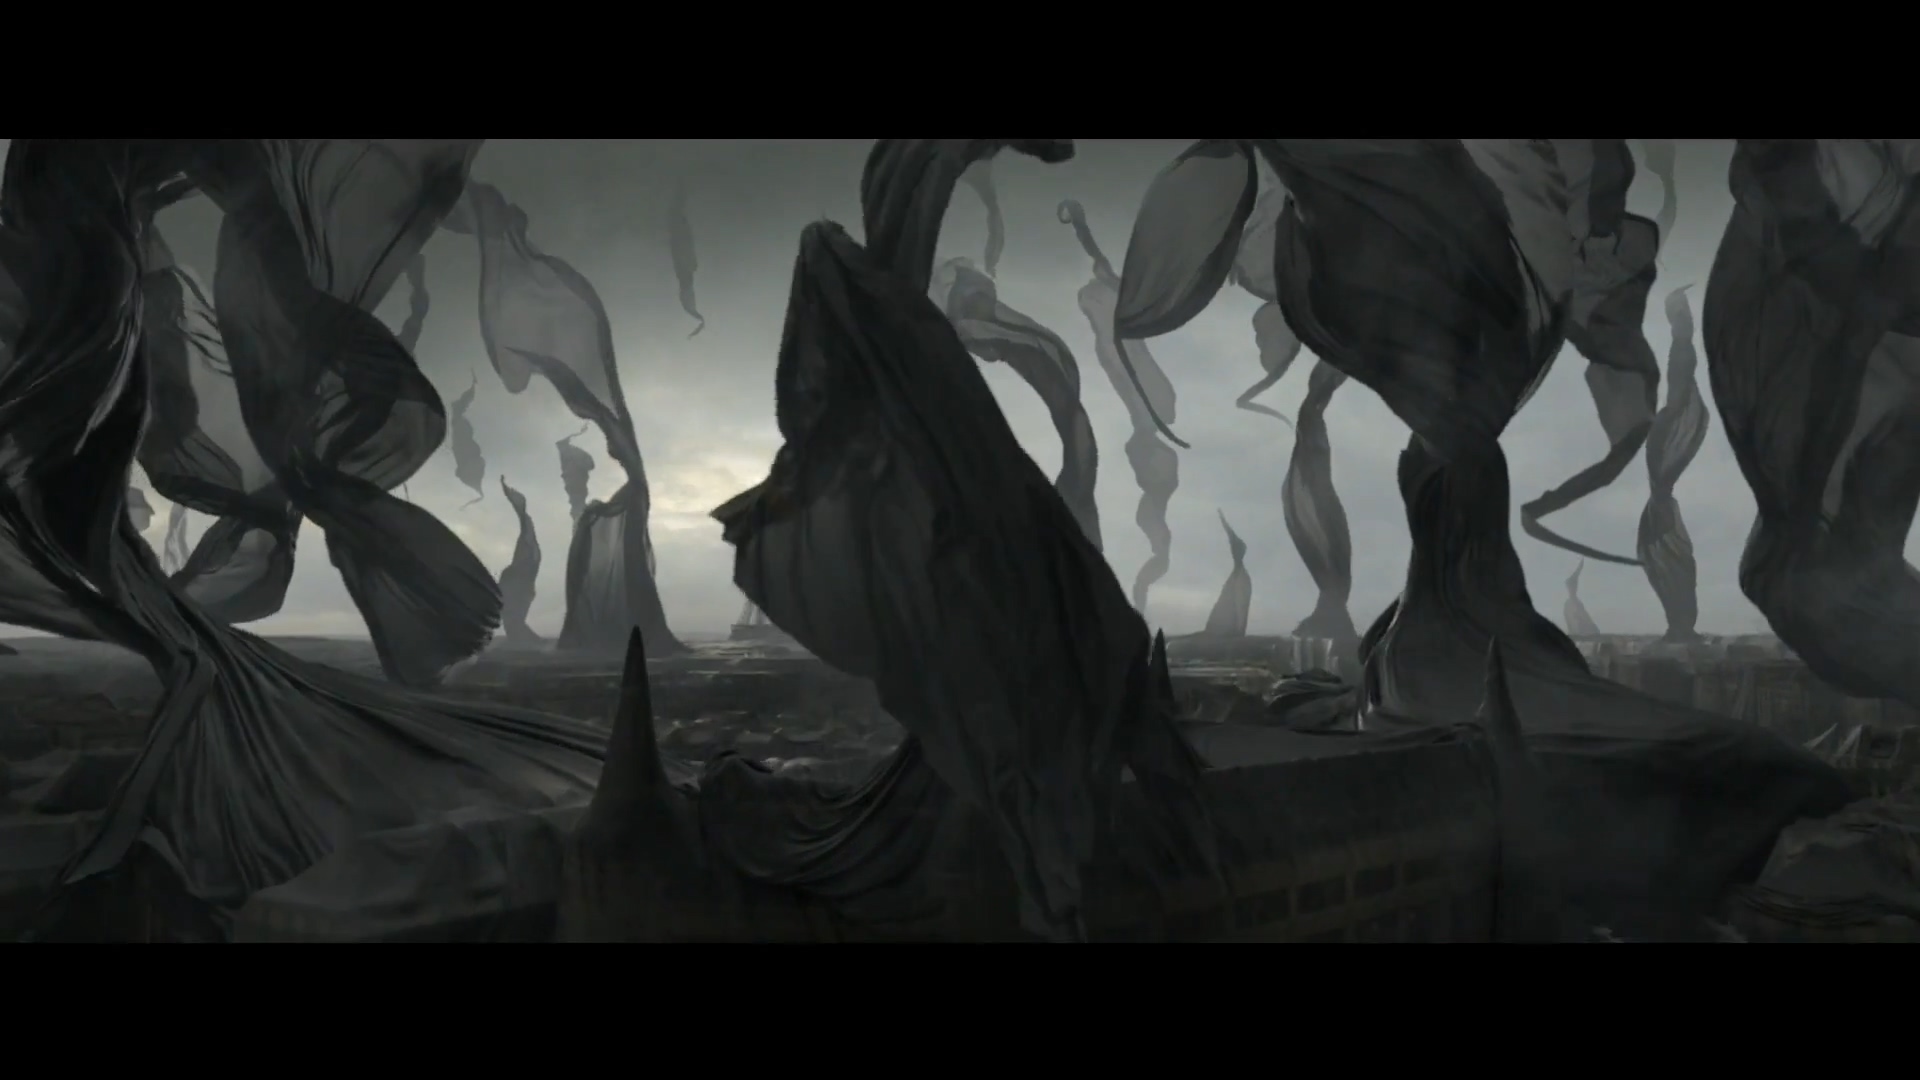 《神奇动物2》终极版中文预告 山海经神兽惊艳全场